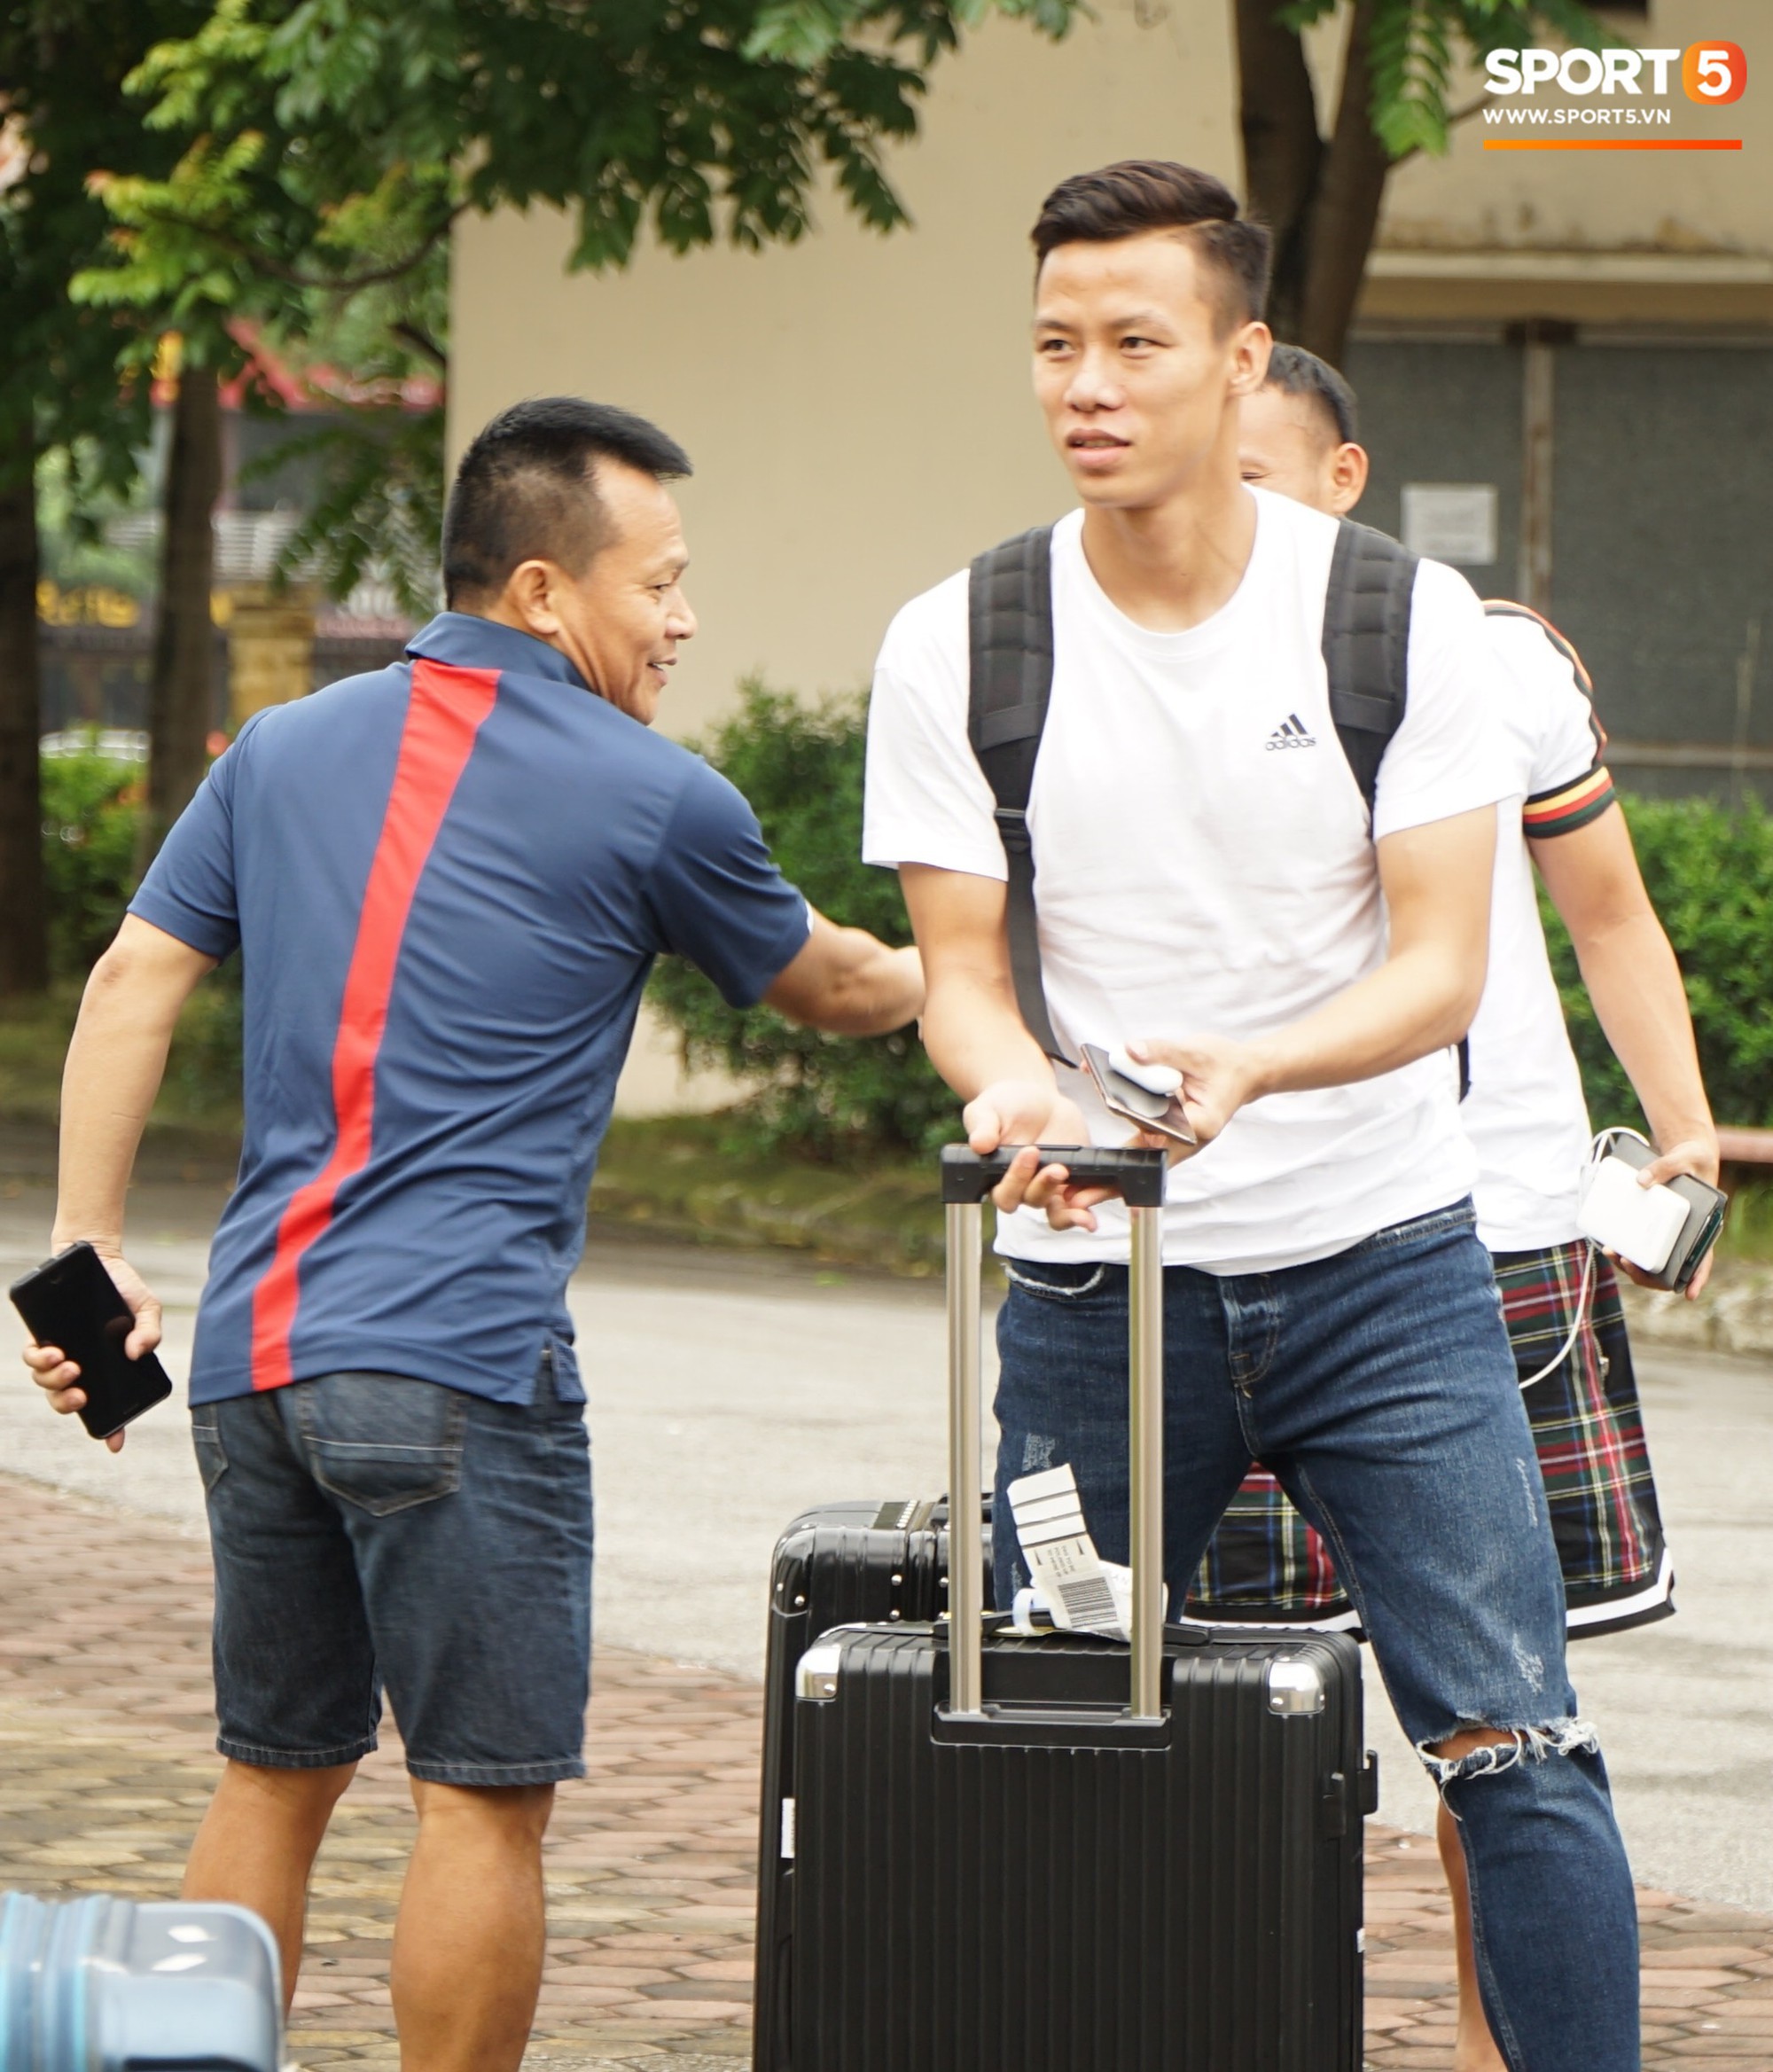 Dàn tuyển thủ Việt Nam bảnh bao hội quân chuẩn bị dự Kings Cup 2019 - Ảnh 1.